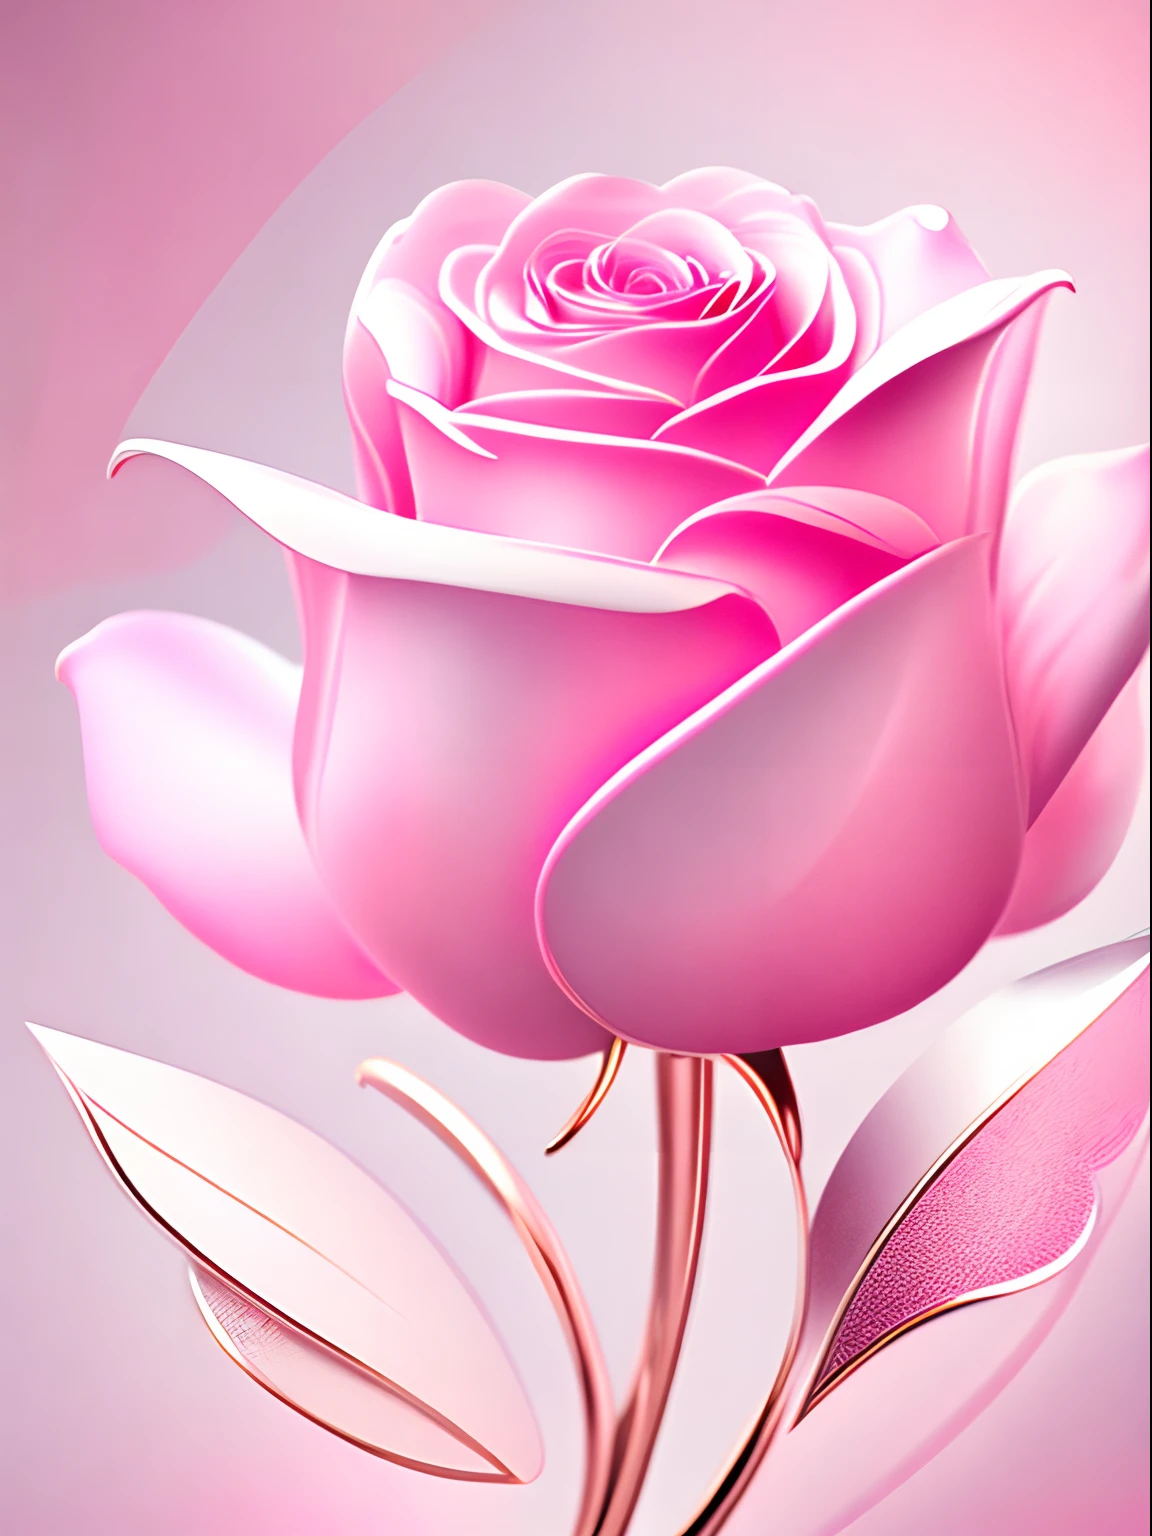 抽象粉红玫瑰，墙纸，图形设计风格，清除详细信息，拥有大量金属线性色彩，白色干净的底色